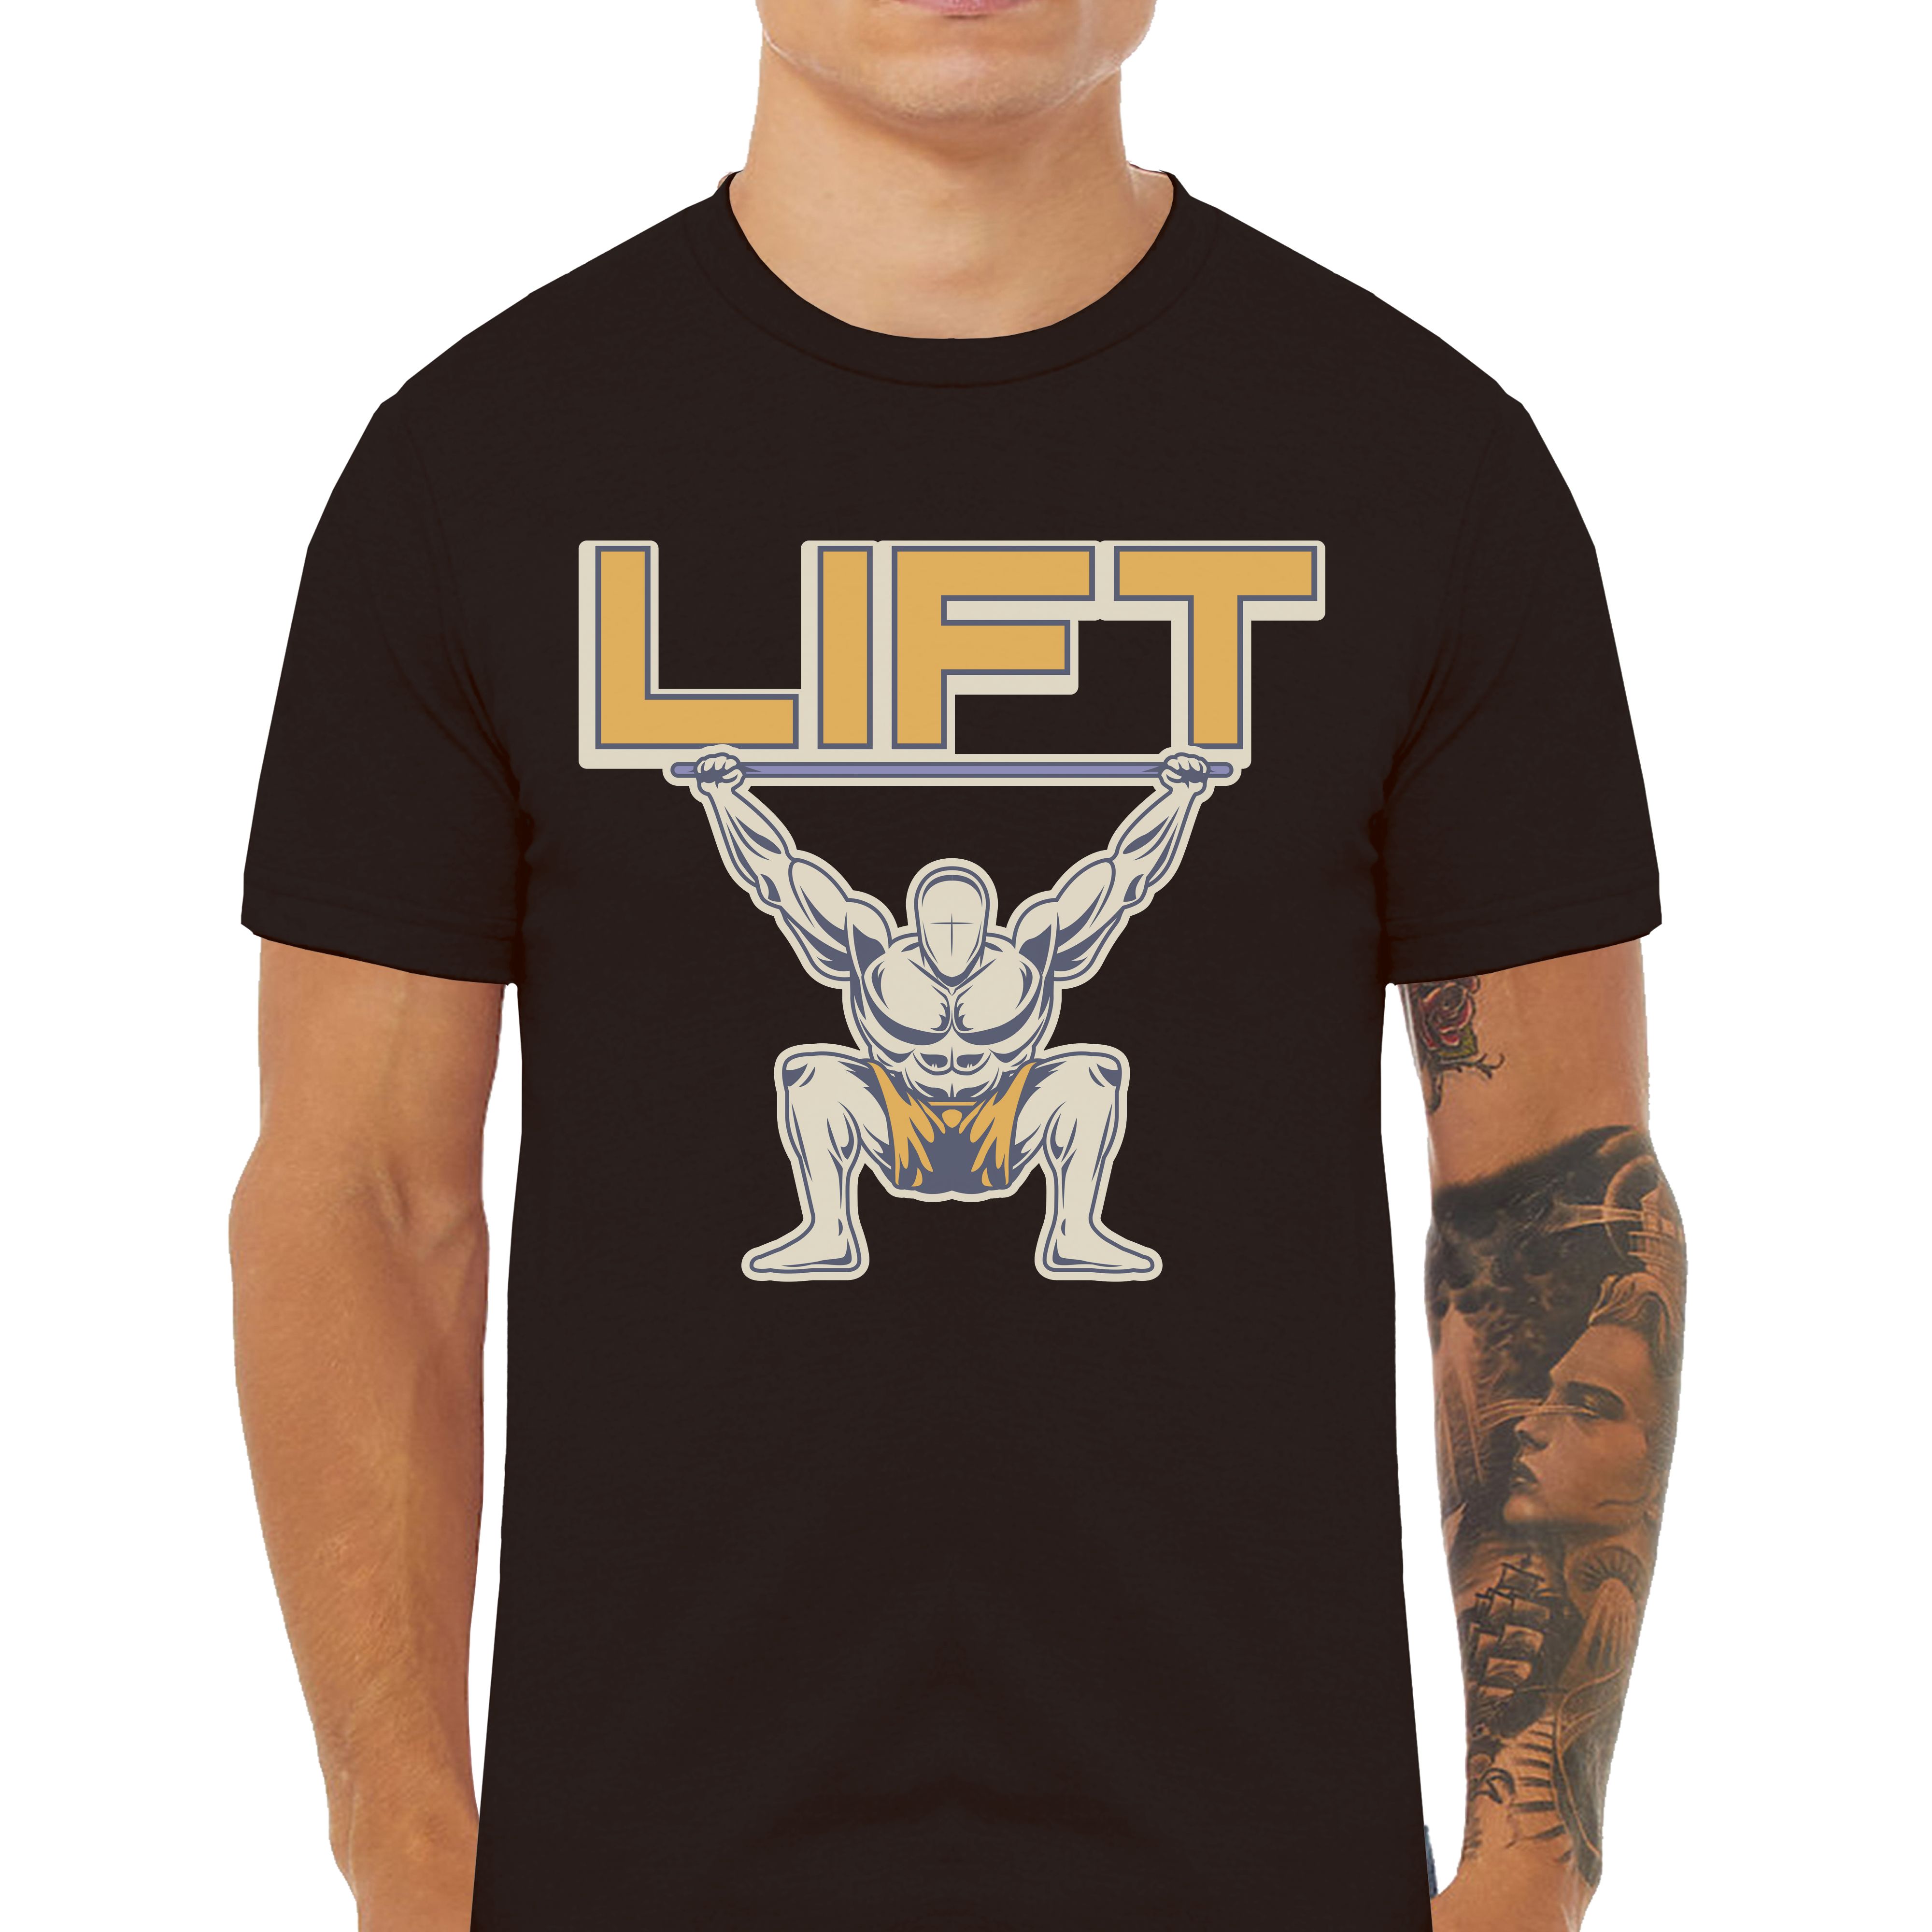 LIFT Gym Workout Empowering T-Shirts - Cuztom Threadz